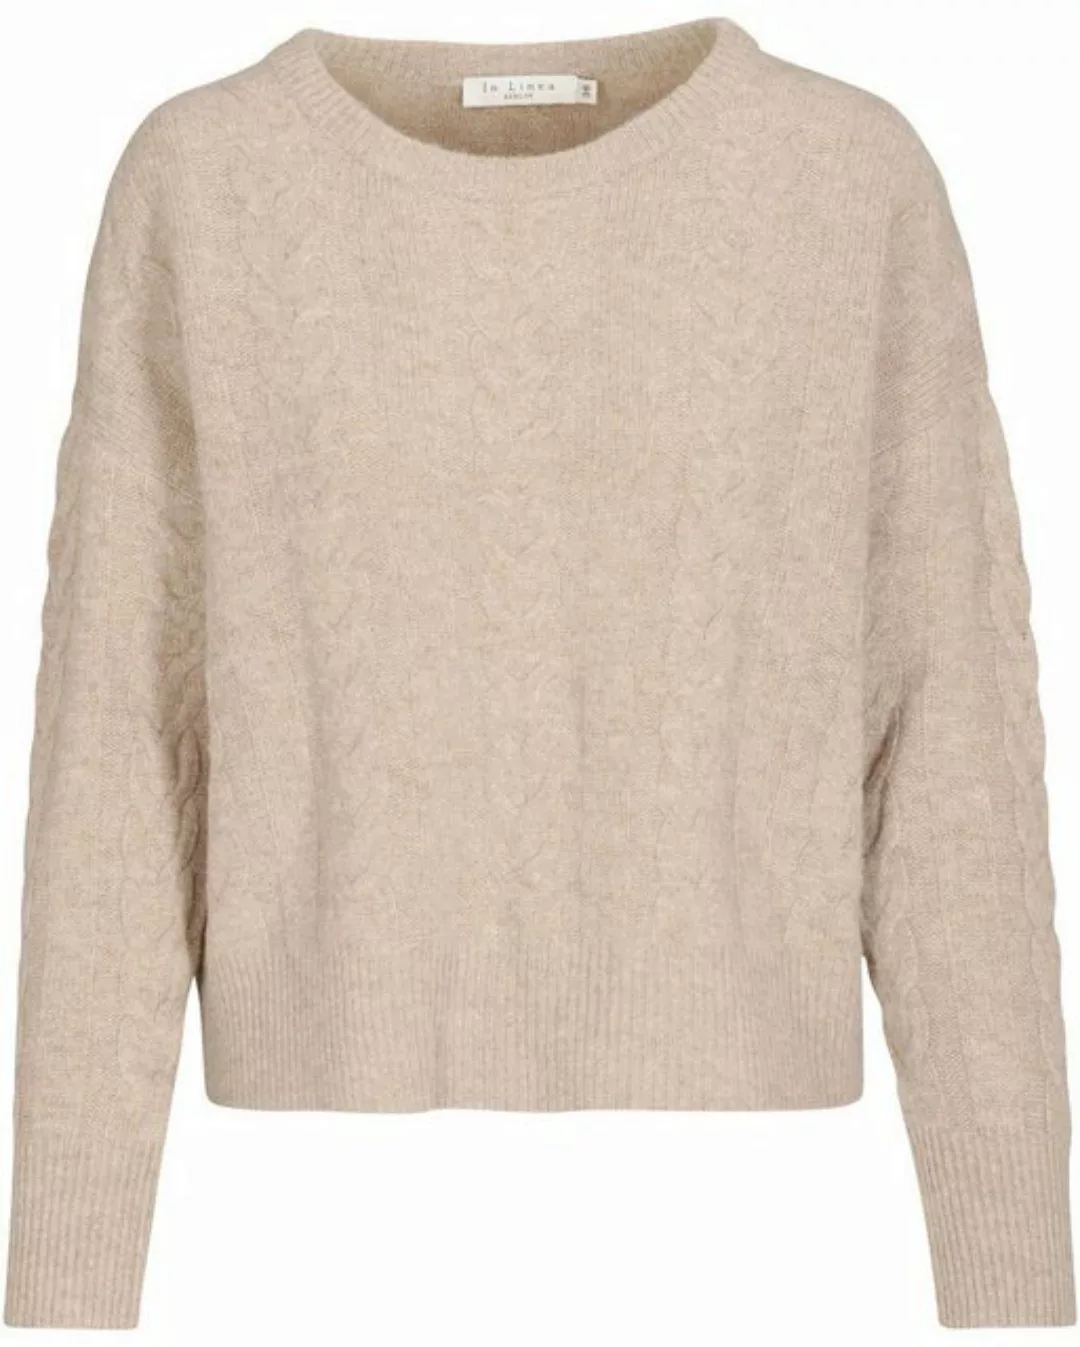 IN LINEA Strickpullover Pullover mit Zopfmuster günstig online kaufen